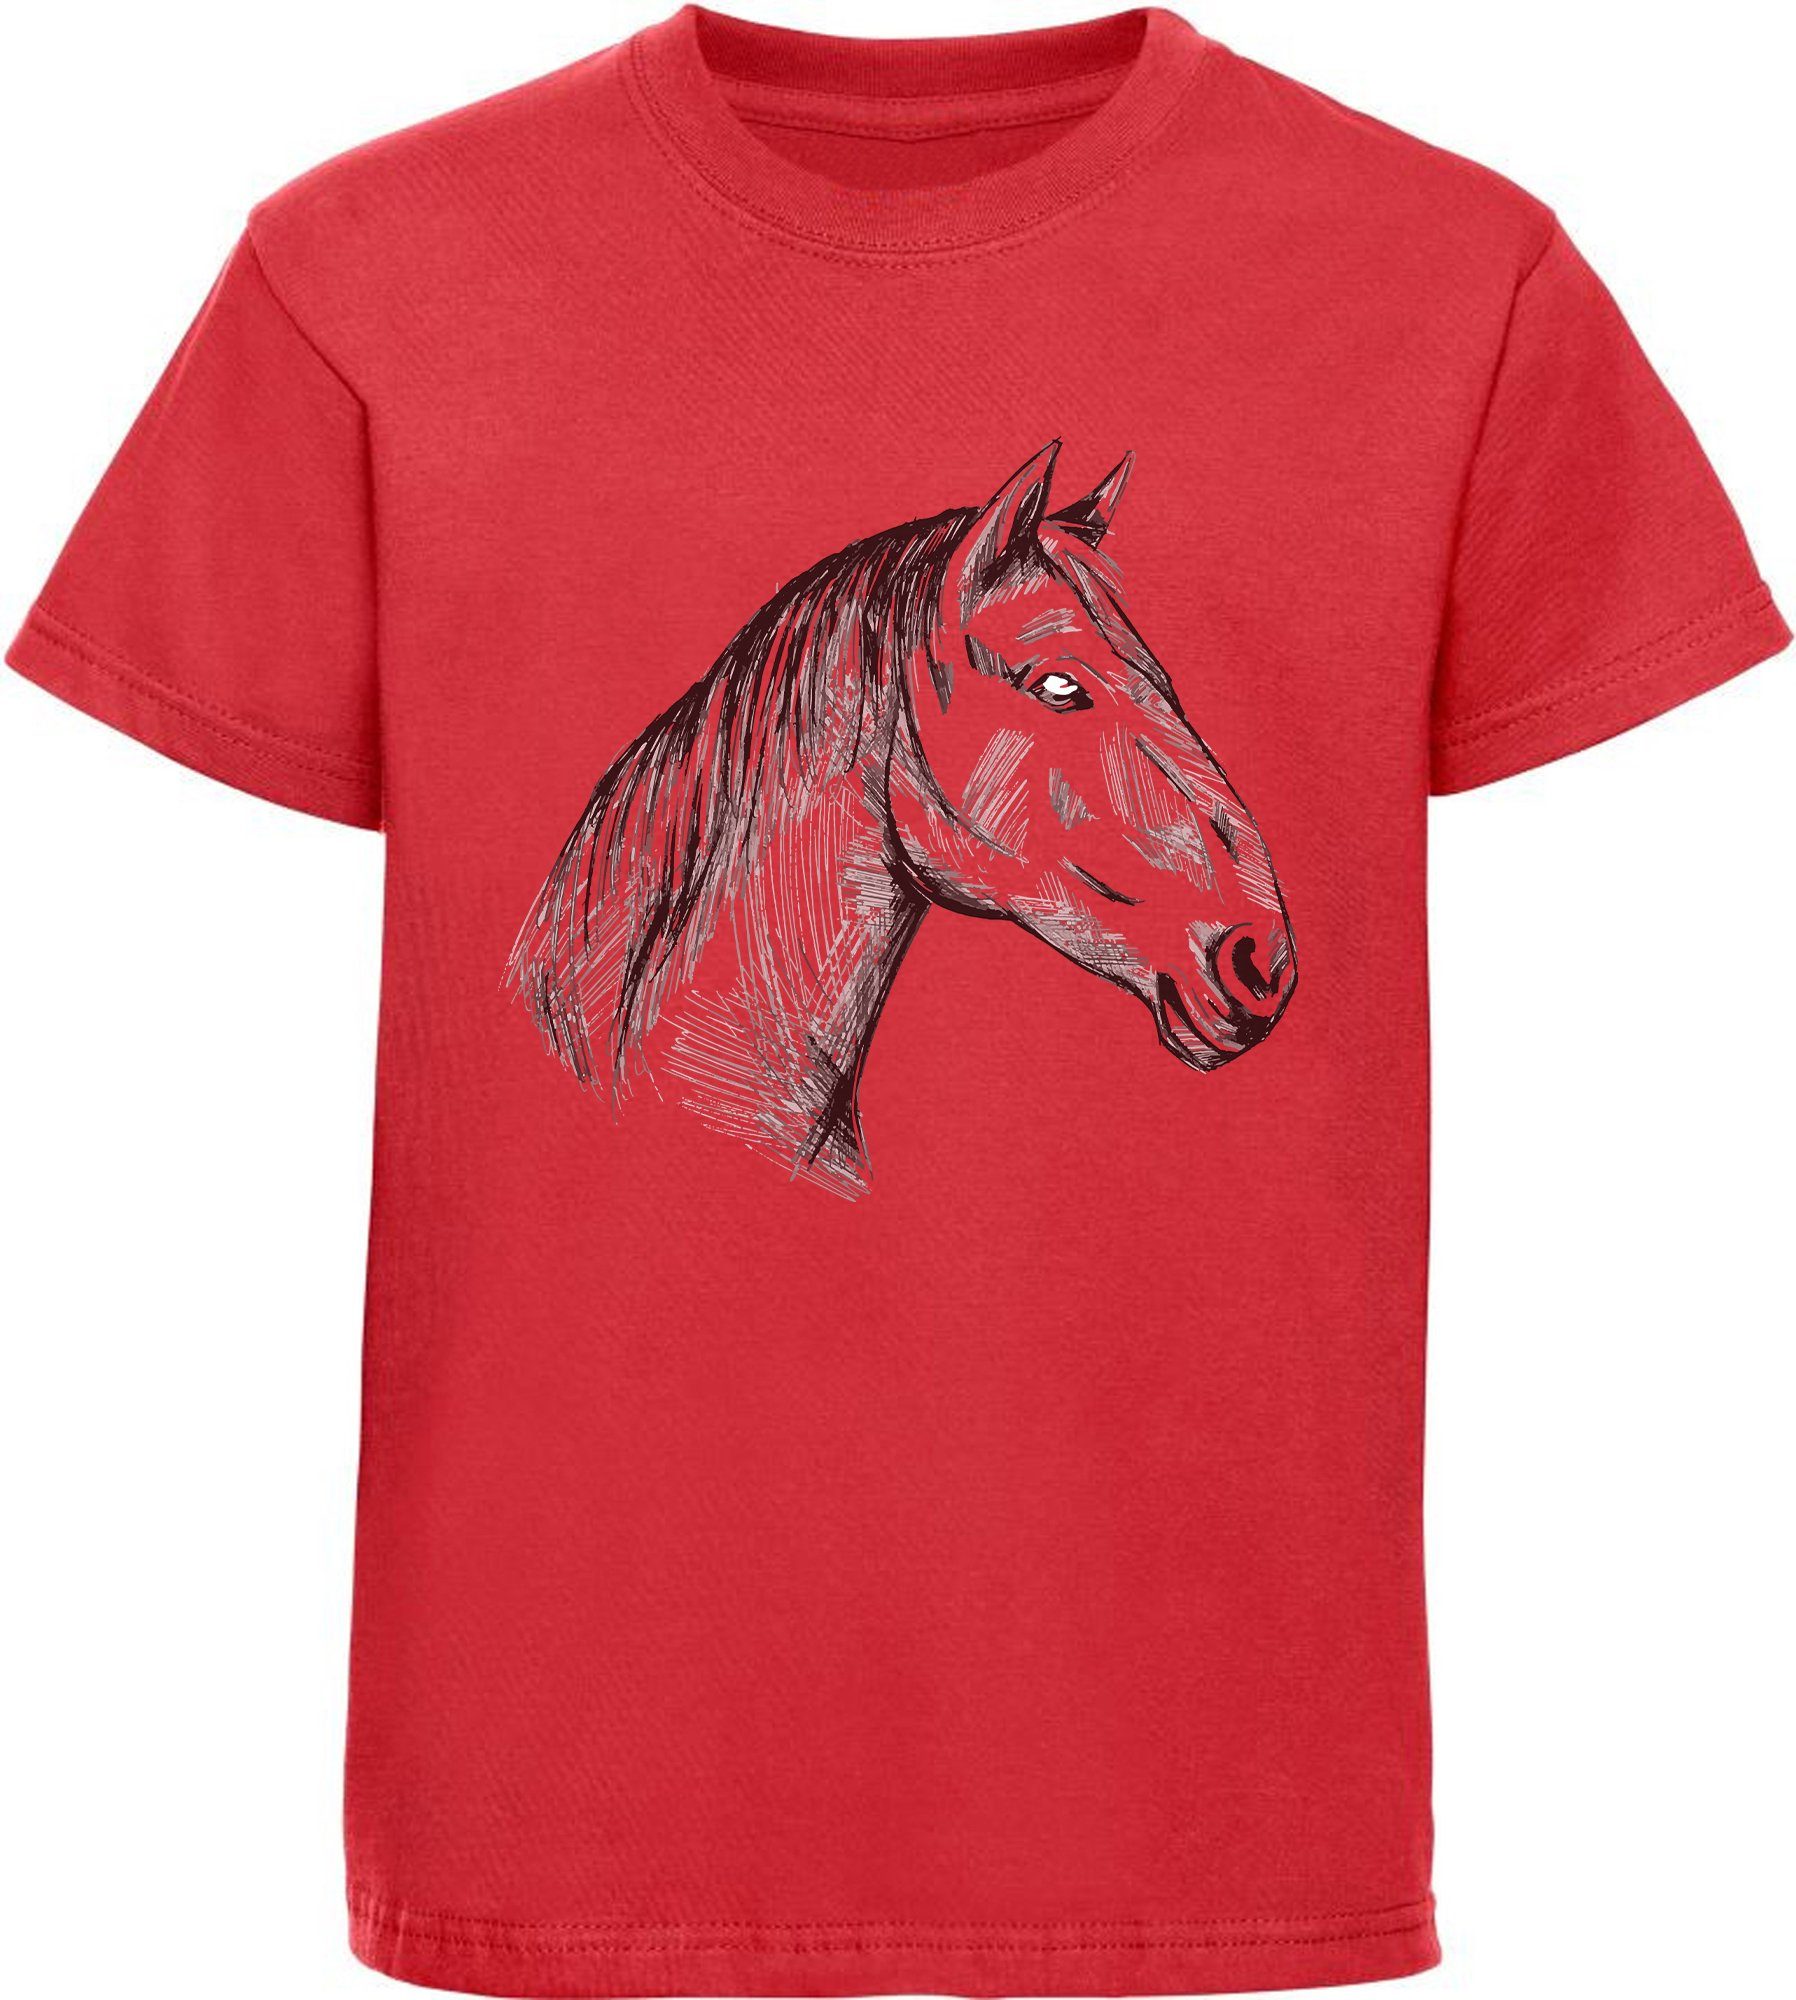 Print-Shirt MyDesign24 gezeichneter Pferdekopf Aufdruck, T-Shirt Baumwollshirt i142 mit Mädchen bedrucktes rot